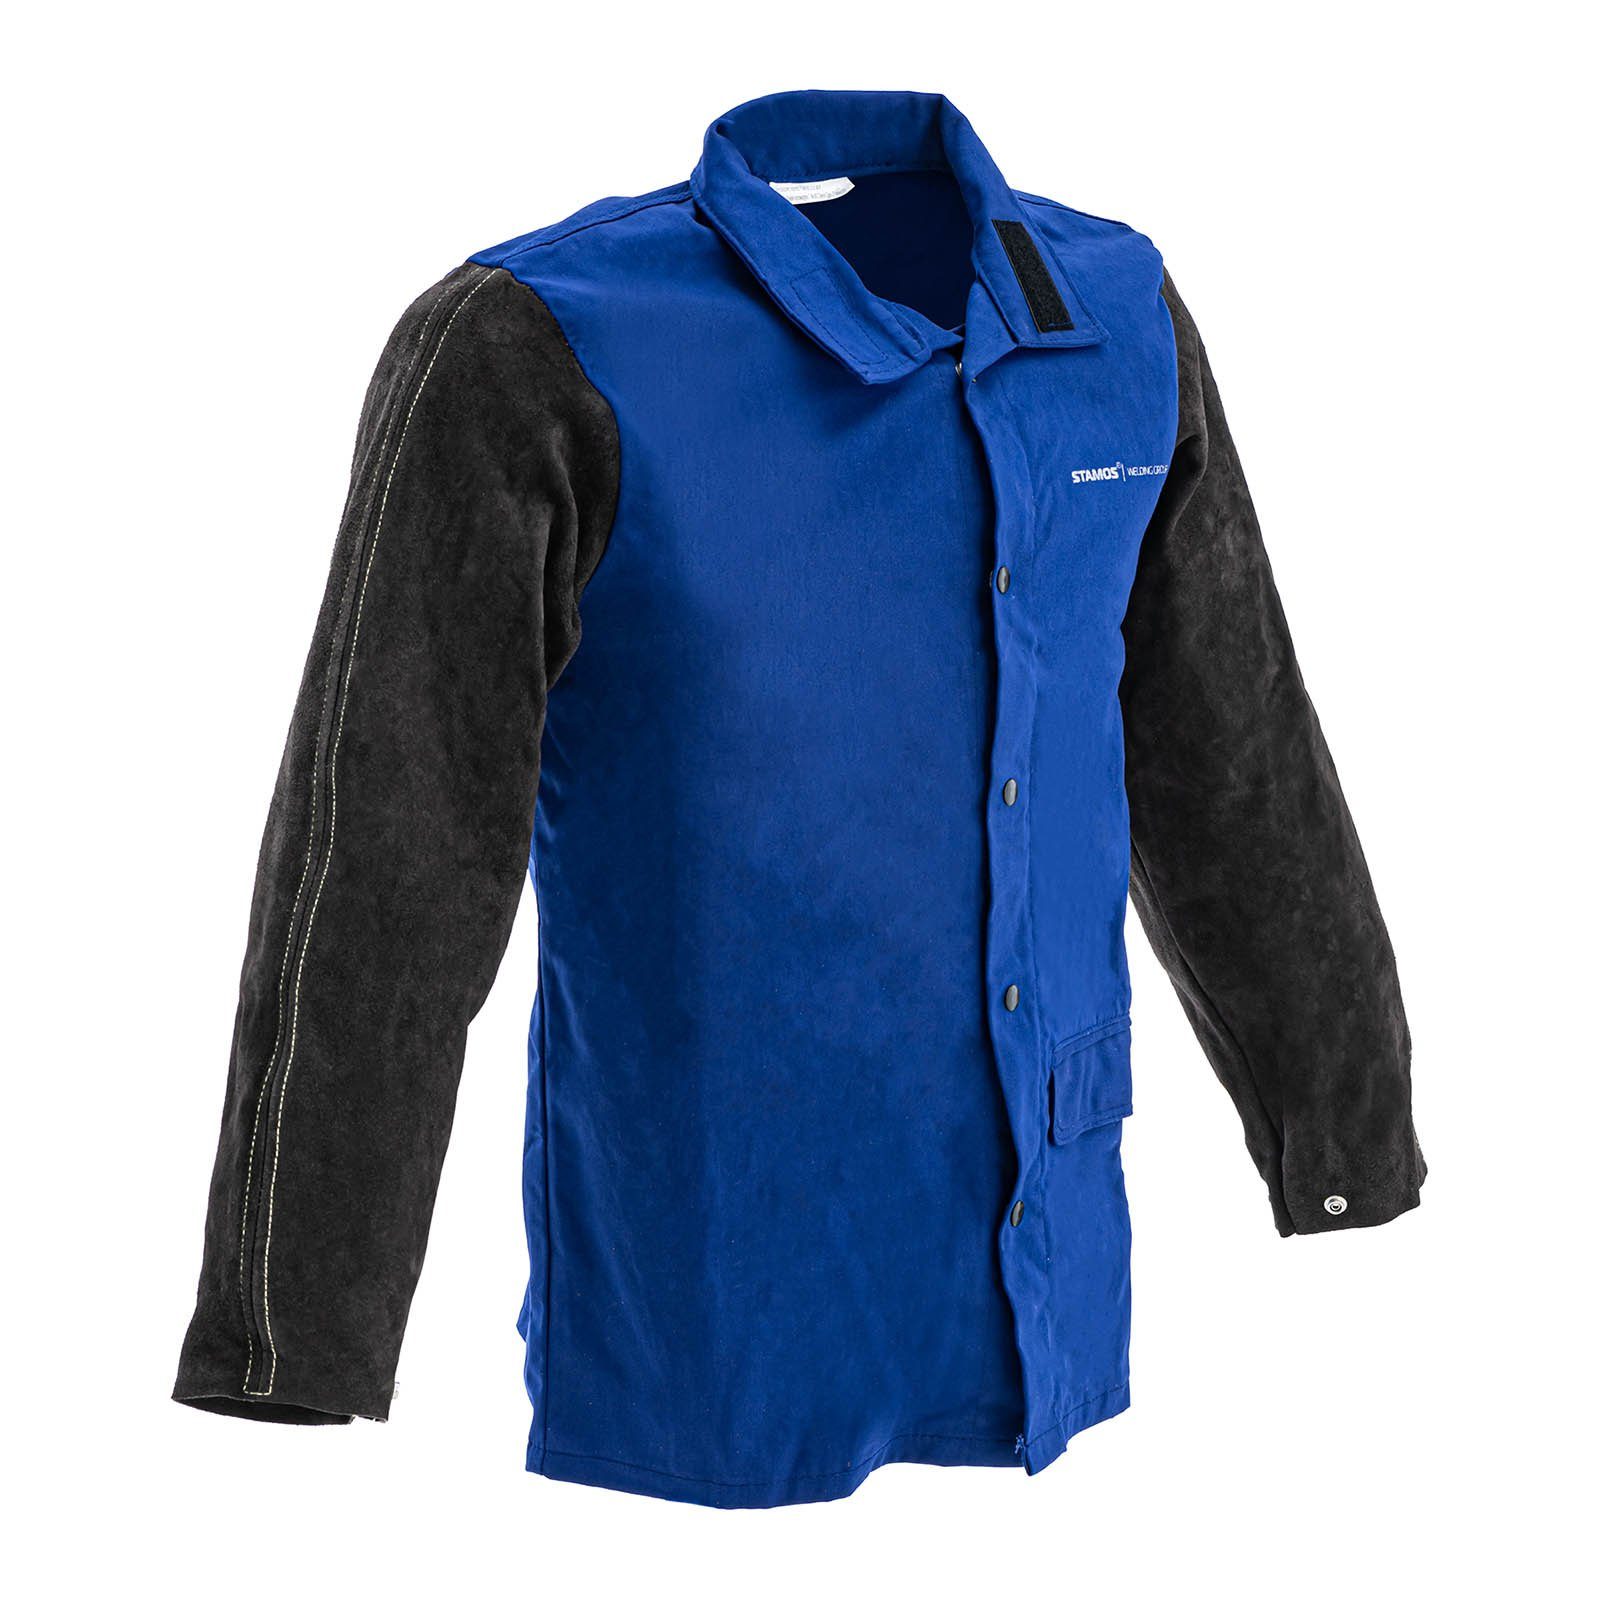 Stamos Welding Group Arbeitsjacke Schweißerjacke aus Baumwollsatin/Rindspaltleder -größe XL-schwarz/blau